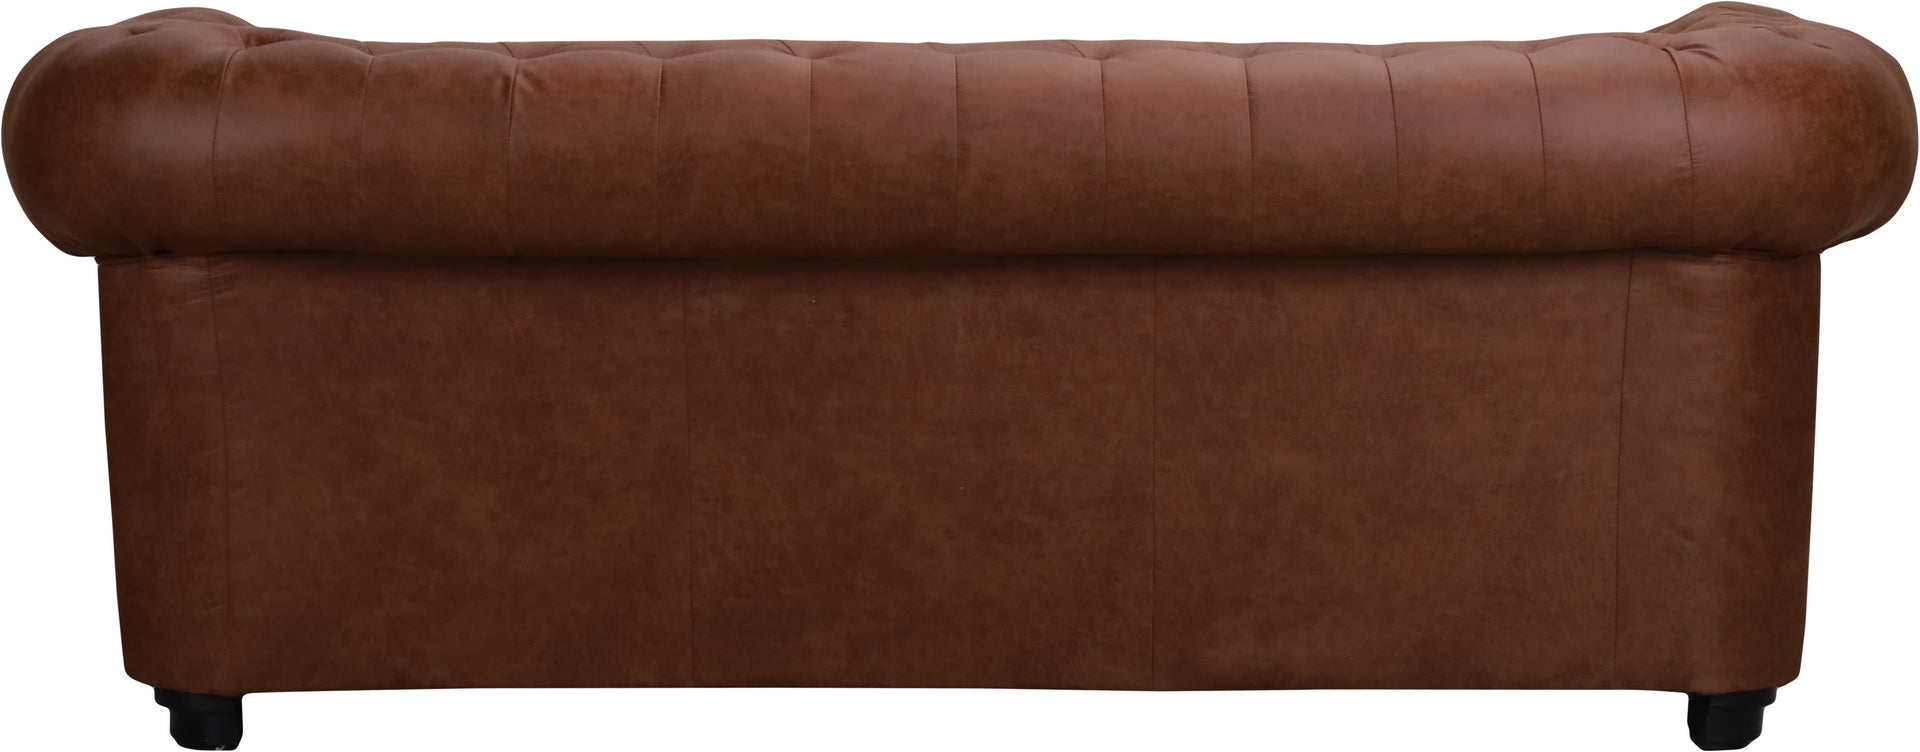 Conjunt sofa 3+2 places - ASTOR